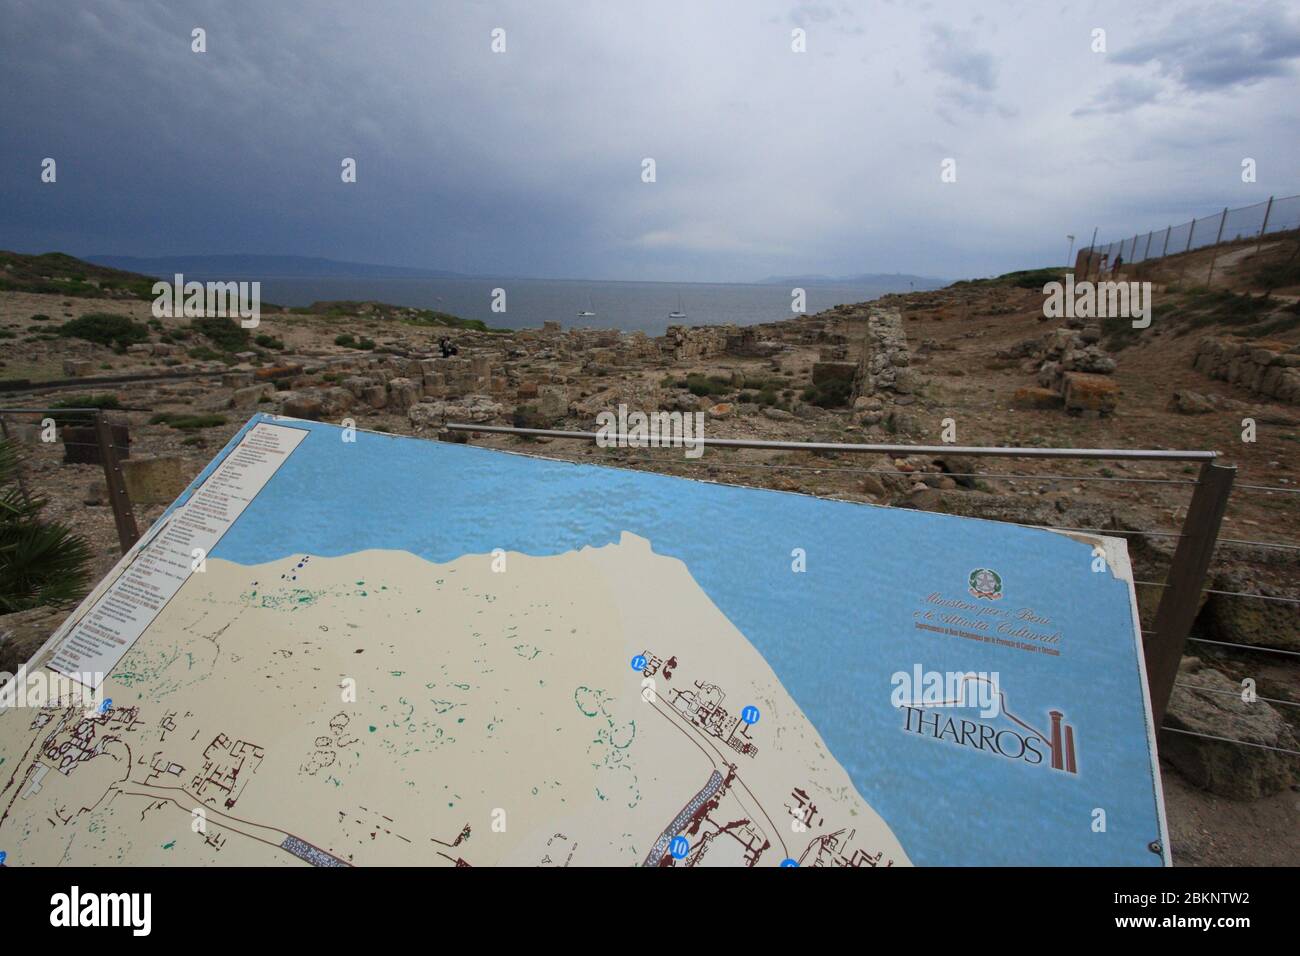 Cabras, Italia - 4 Luglio 2011: il sito archeologico di Tharros in provincia di Oristano Foto Stock